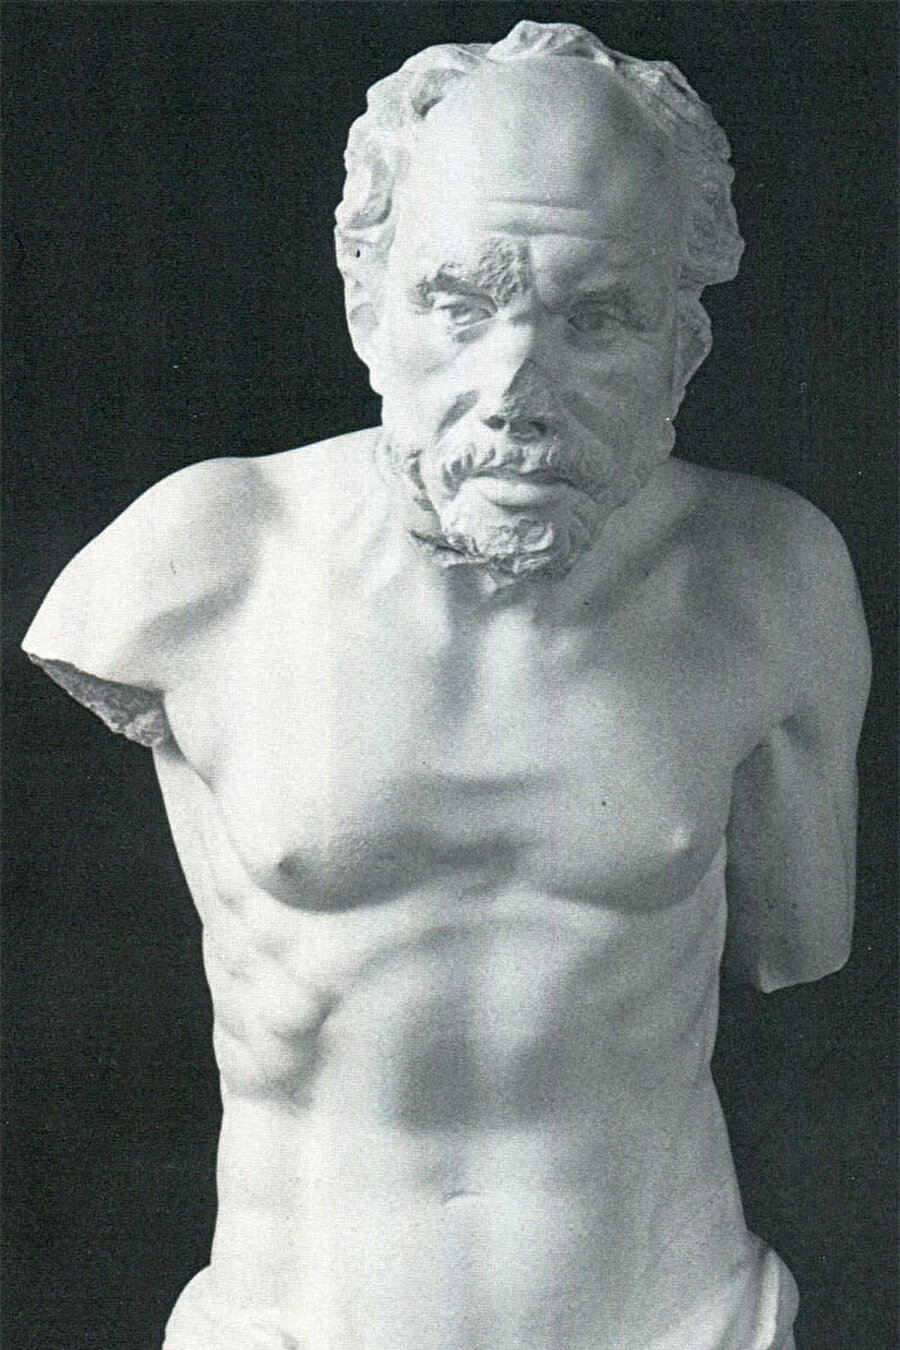 İhtiyar Balıkçı Heykeli

                                    
                                    Afrodisias Antik Kenti'nde olduğu bilinen ama sadece kol ve bacak kısımları bulunan İhtiyar Balıkçı heykelinin ana parçası Berlin Müzesi'nde bulunuyor.
                                
                                